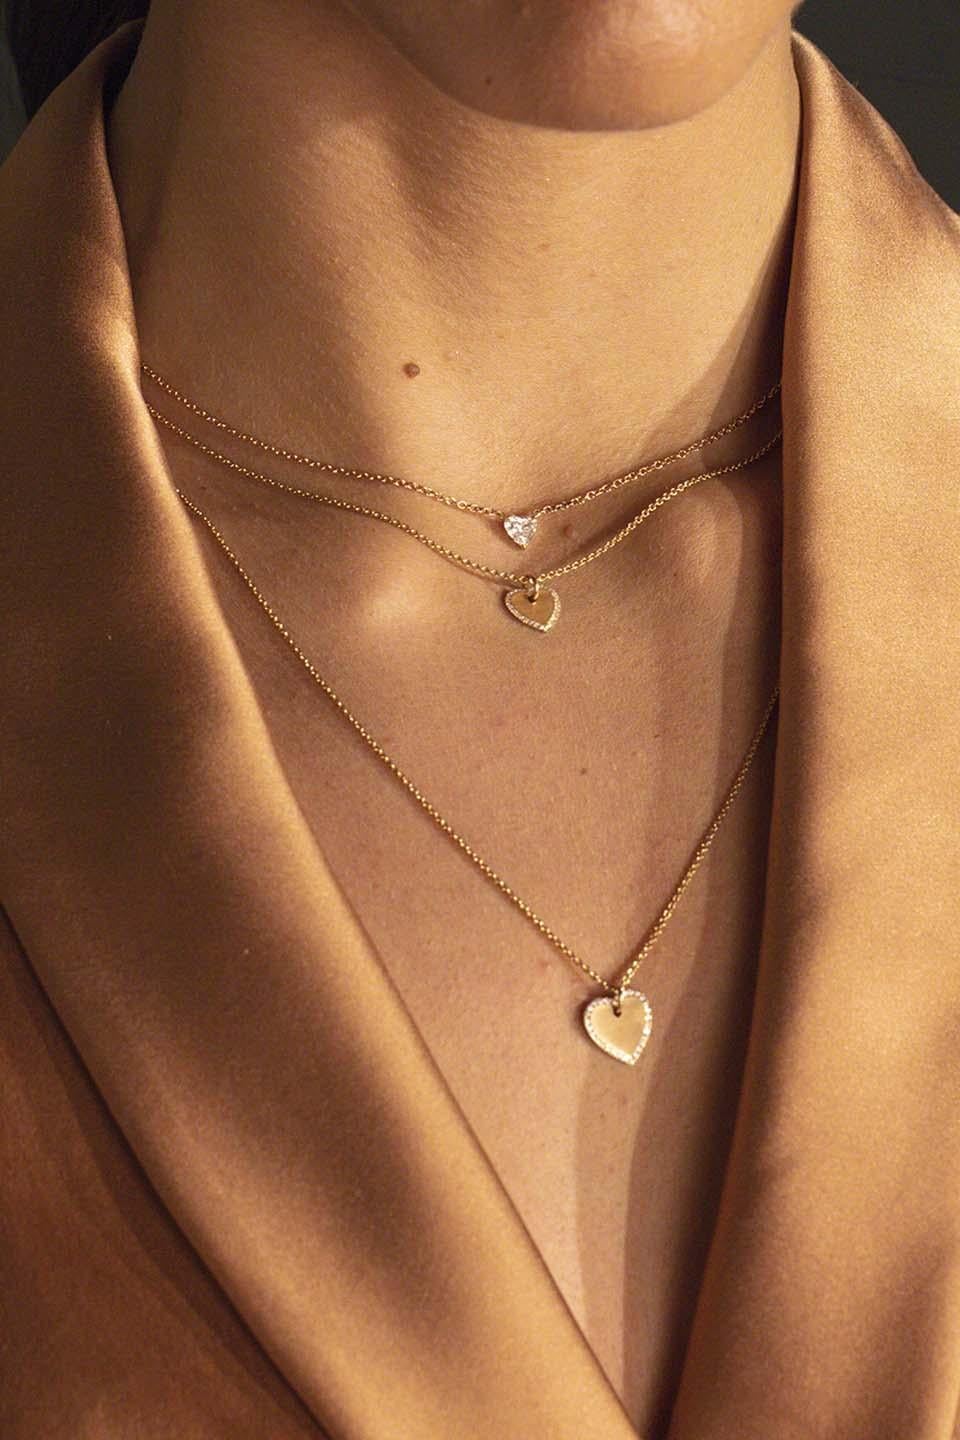 18 Karat Rose Gold Halskette 0,45 Karat Weißer Diamant im Herzschliff

Dies ist unsere Herz-Halskette, die in 18 Karat Weiß- oder Gelbgold erhältlich ist. Dieses Stück ist wirklich einzigartig, weil der Diamant mit unserer 